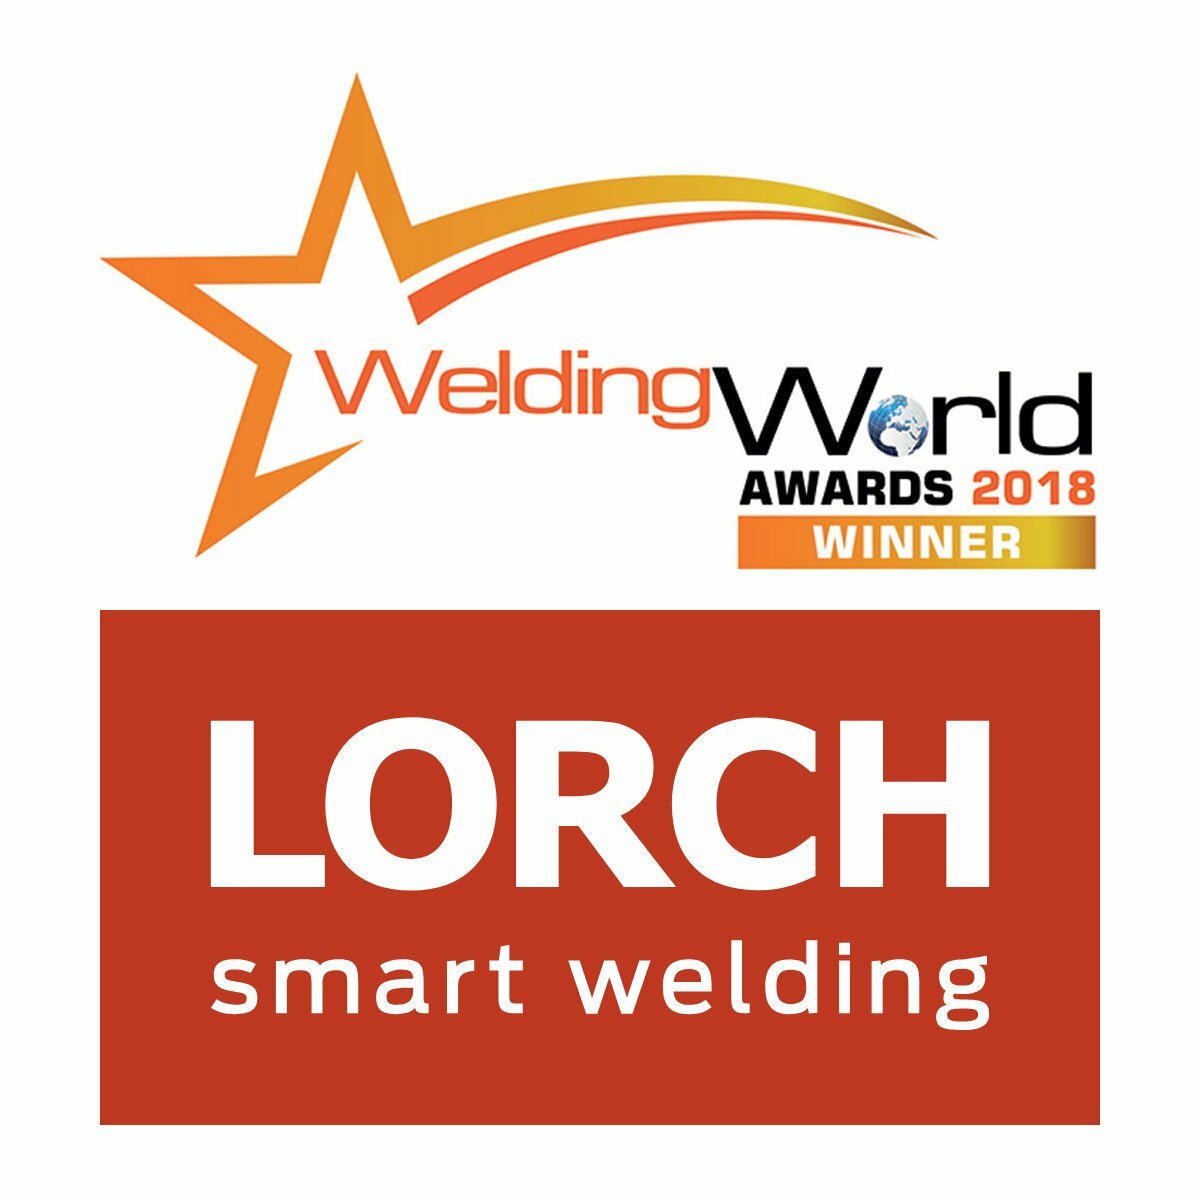 welding-world-awards-2018-winner-lorch